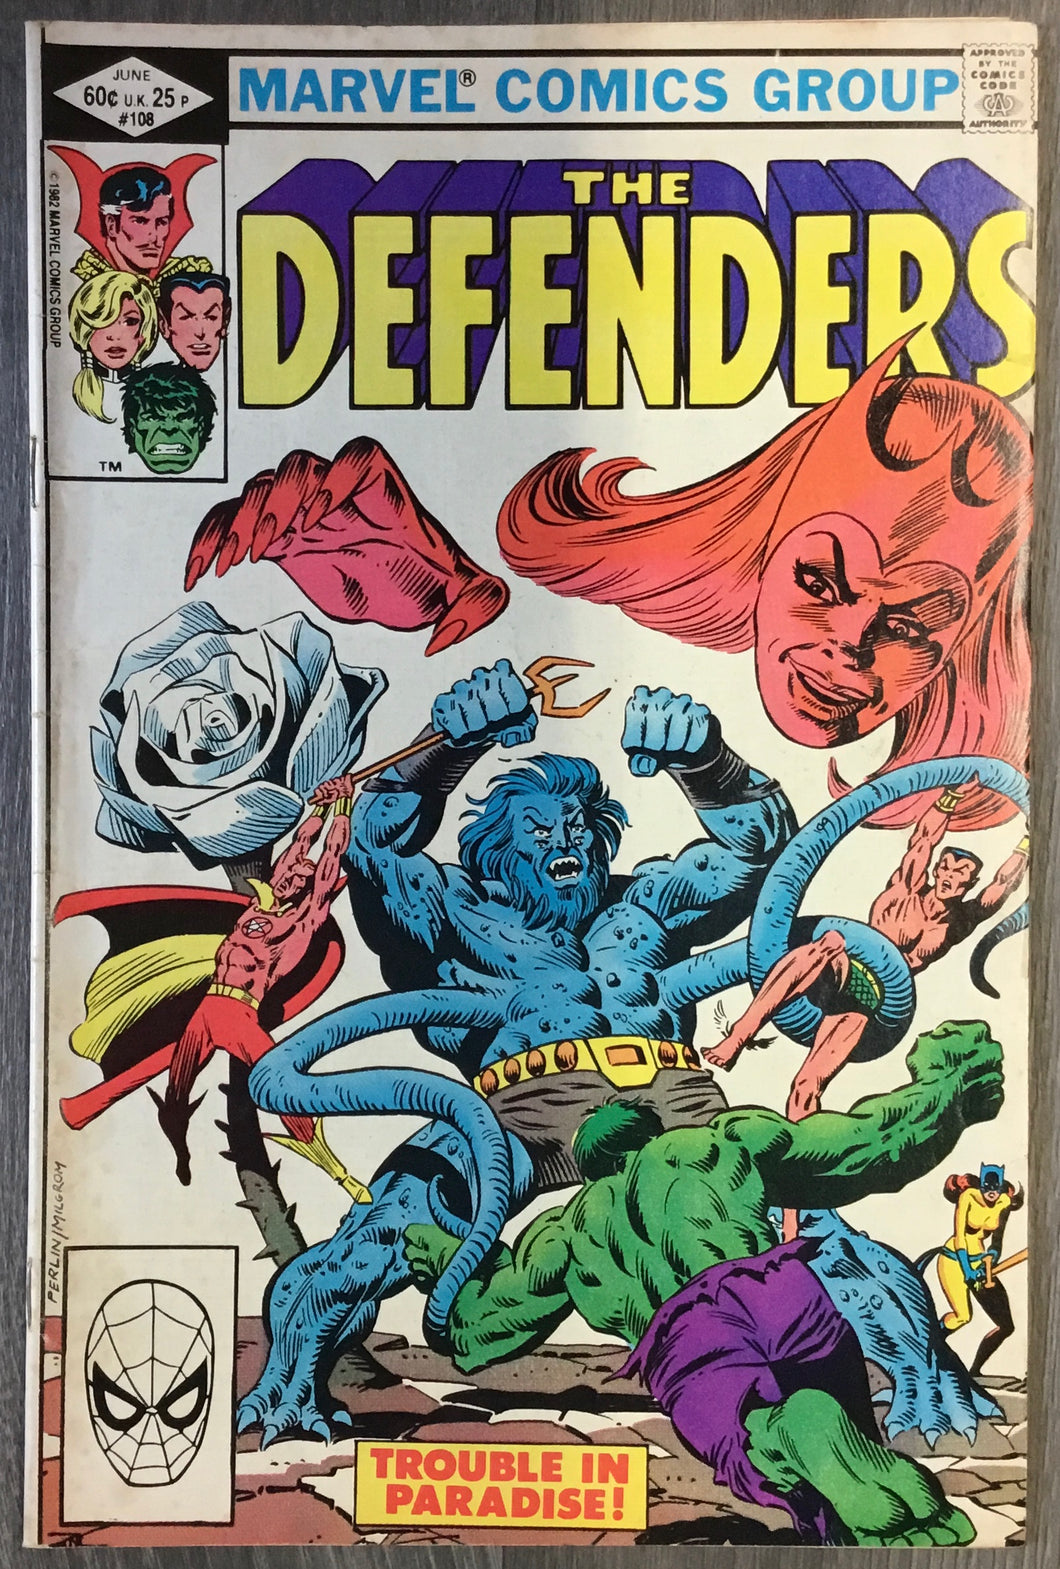 The Defenders No. #108 1982 Marvel Comics